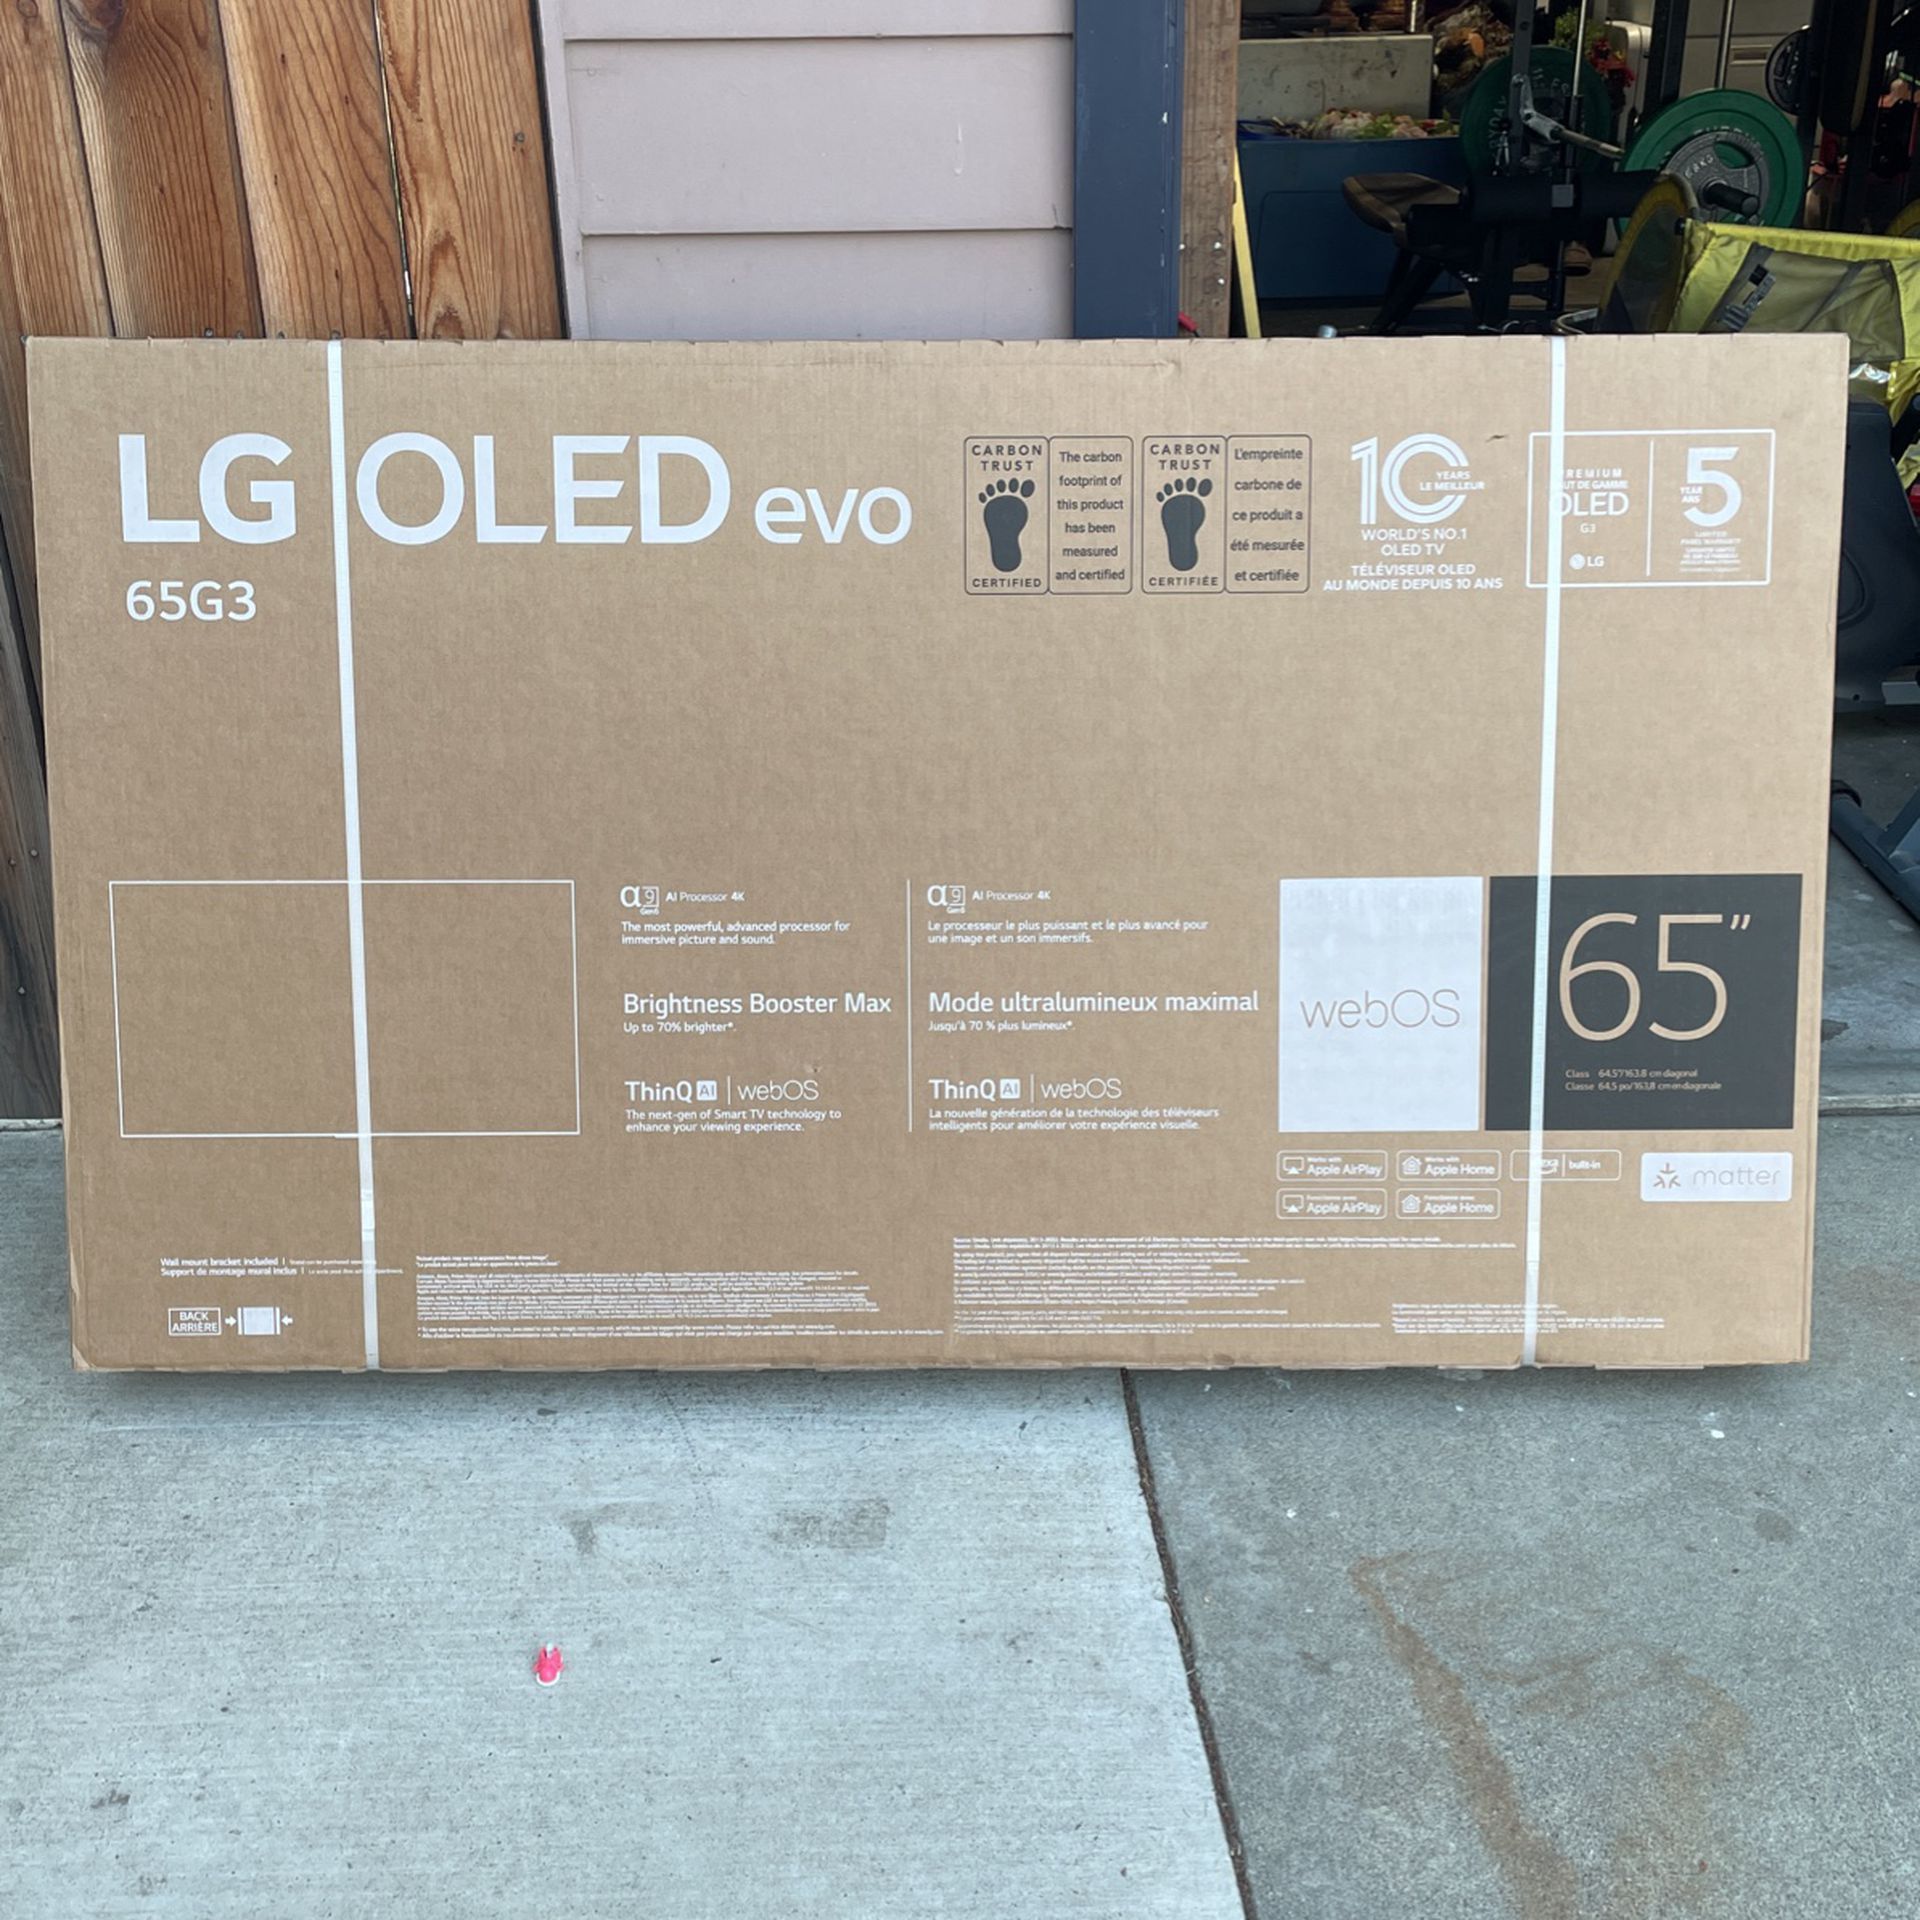 LG 65” OLED evo G3